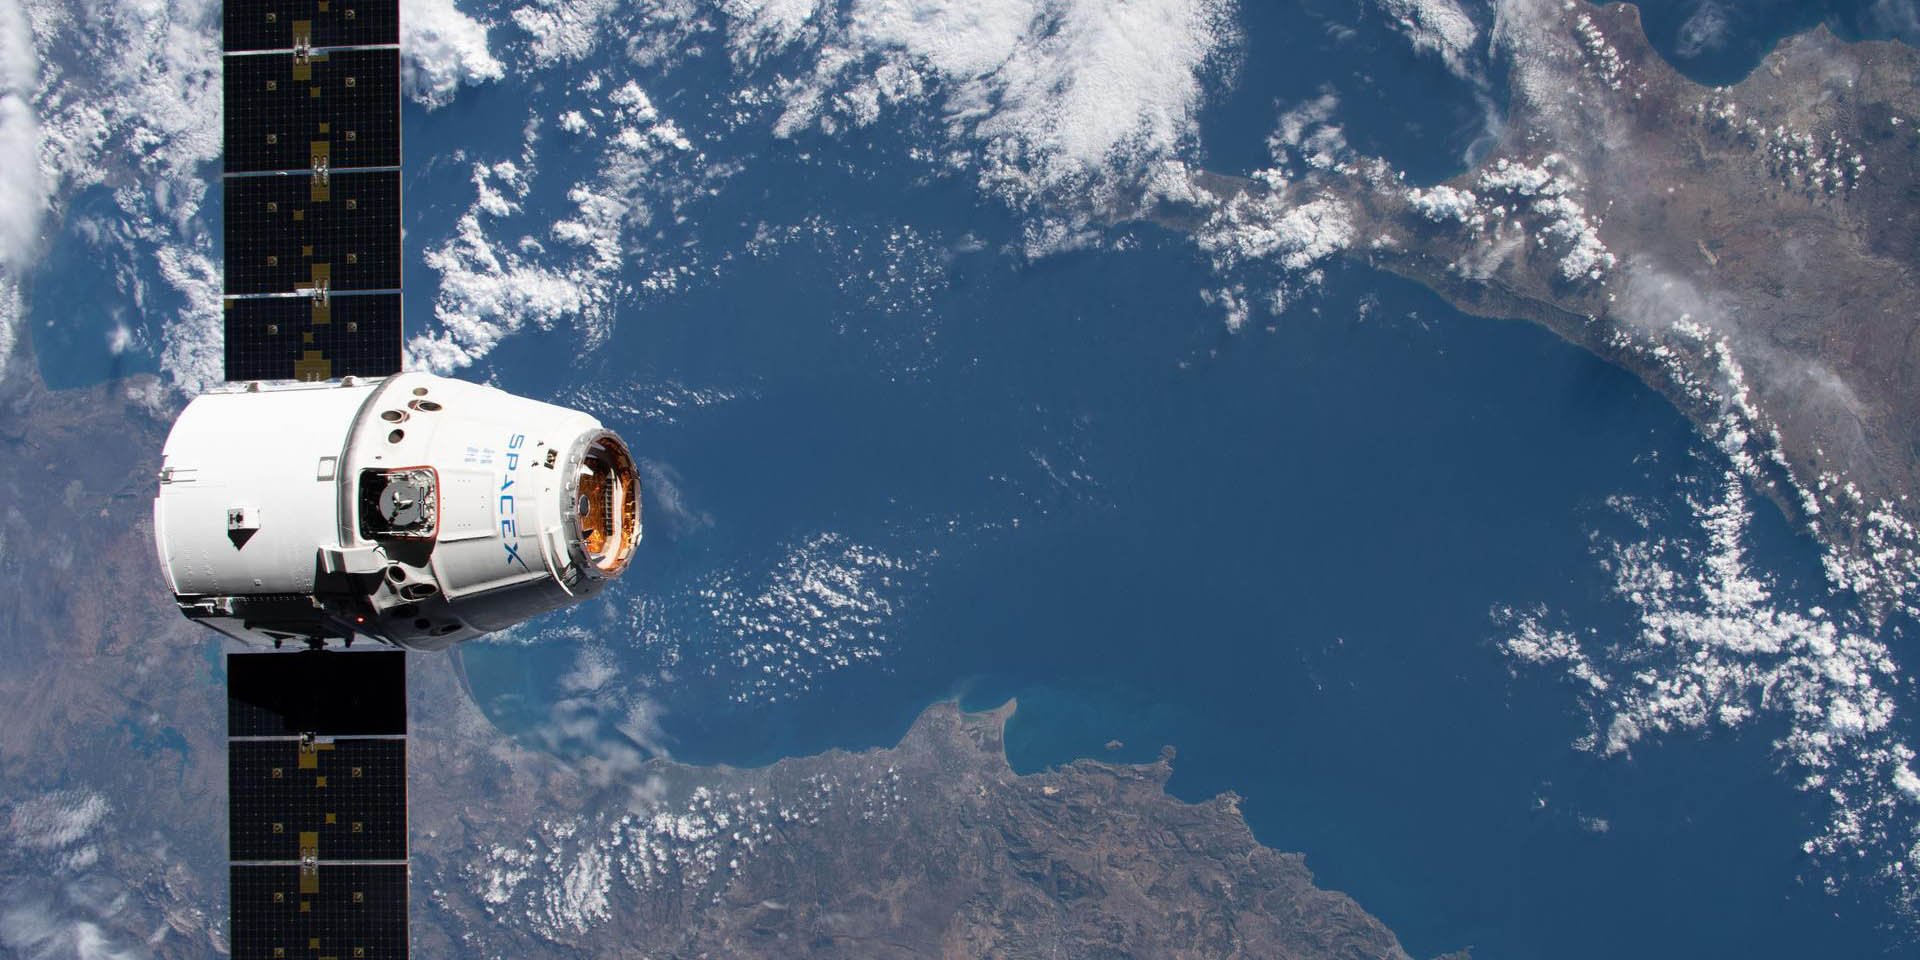 Αστροναύτης «απαθανάτισε» την Κύπρο από το διάστημα - Μαγευτική η εικόνα με το μπλε της Μεσογείου -ΦΩΤΟΓΡΑΦΙΑ